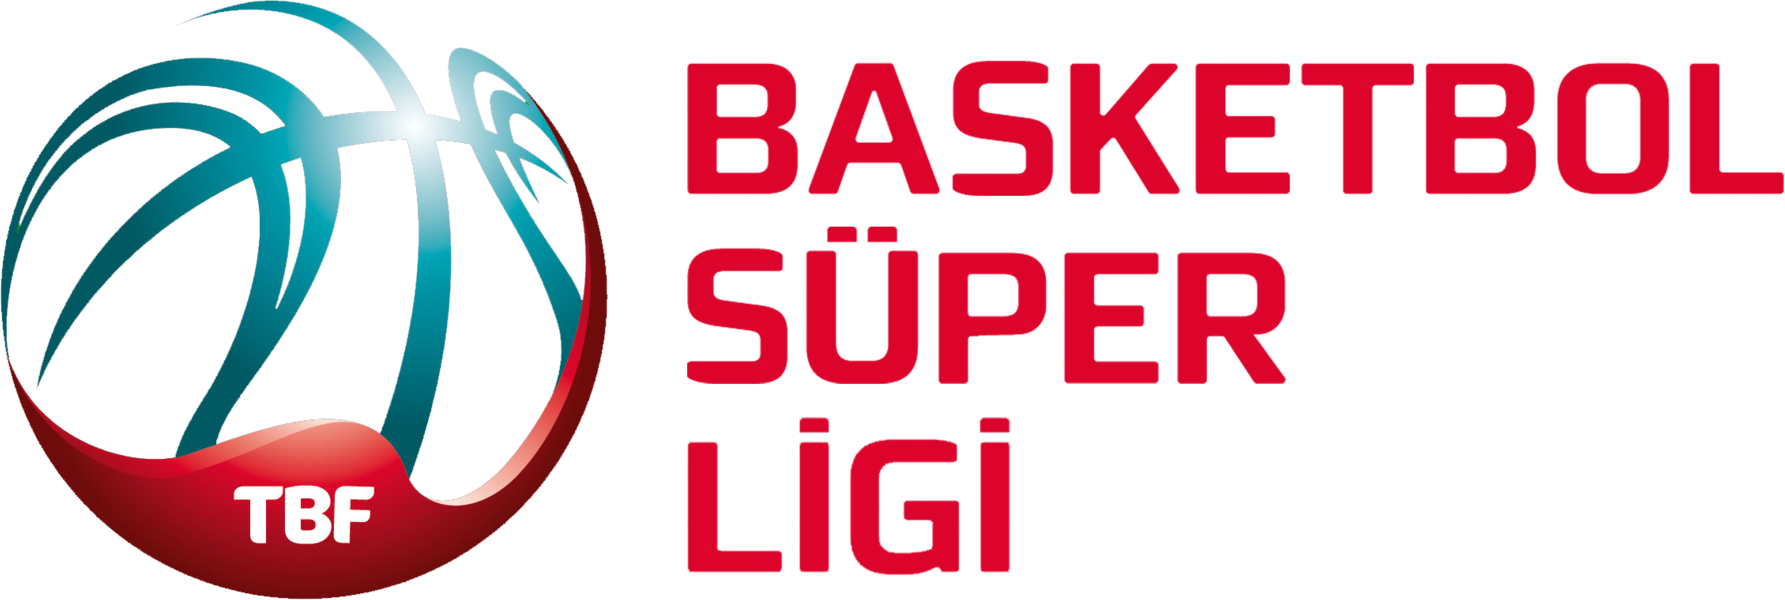 Basketball Super Lig logo